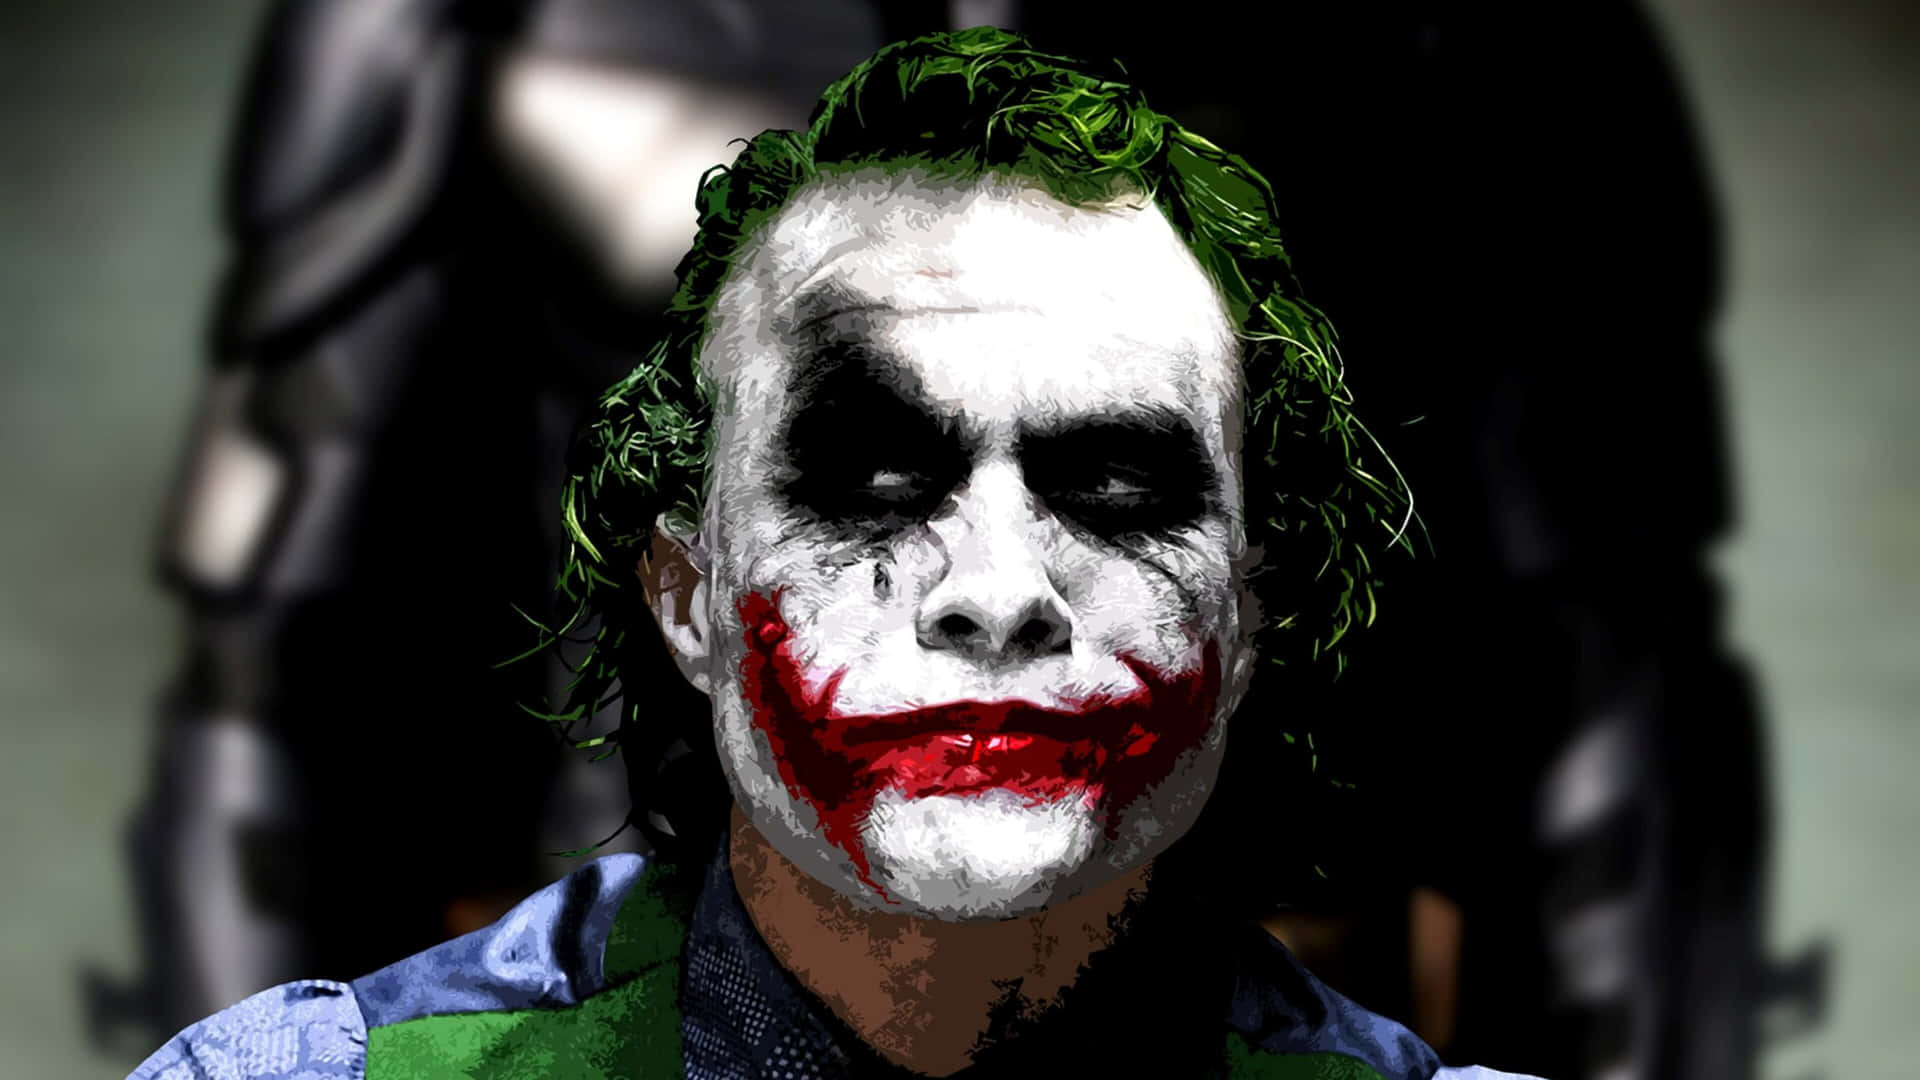 Batman: The Dark Knight Joker in 4k Ultra HD Wallpaper